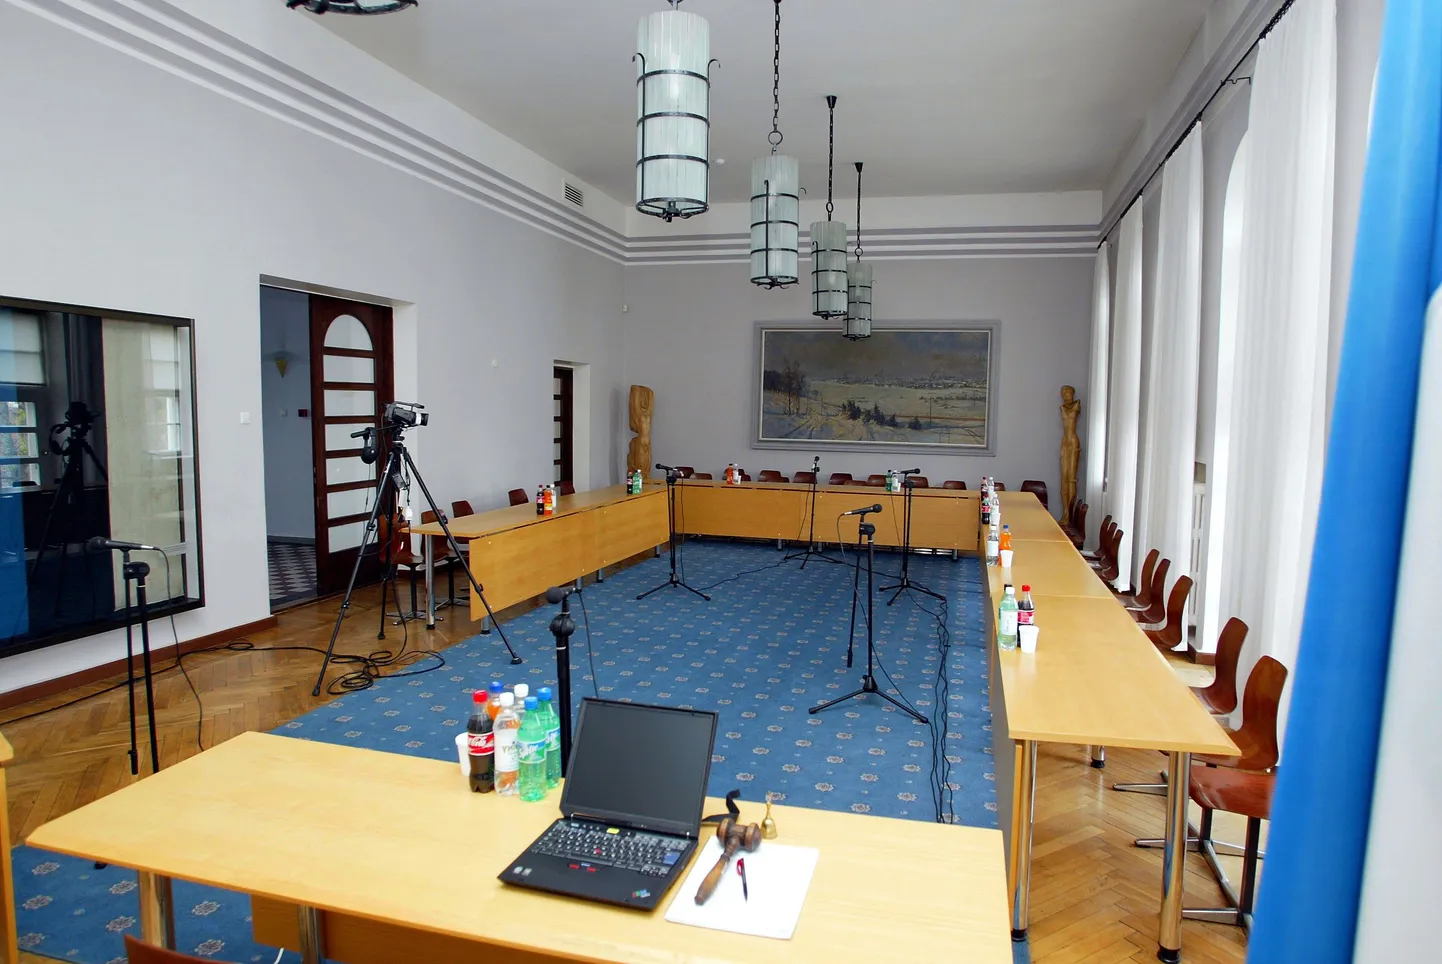 Viljandi volikogu saalis on kohti 27-le saadikule.